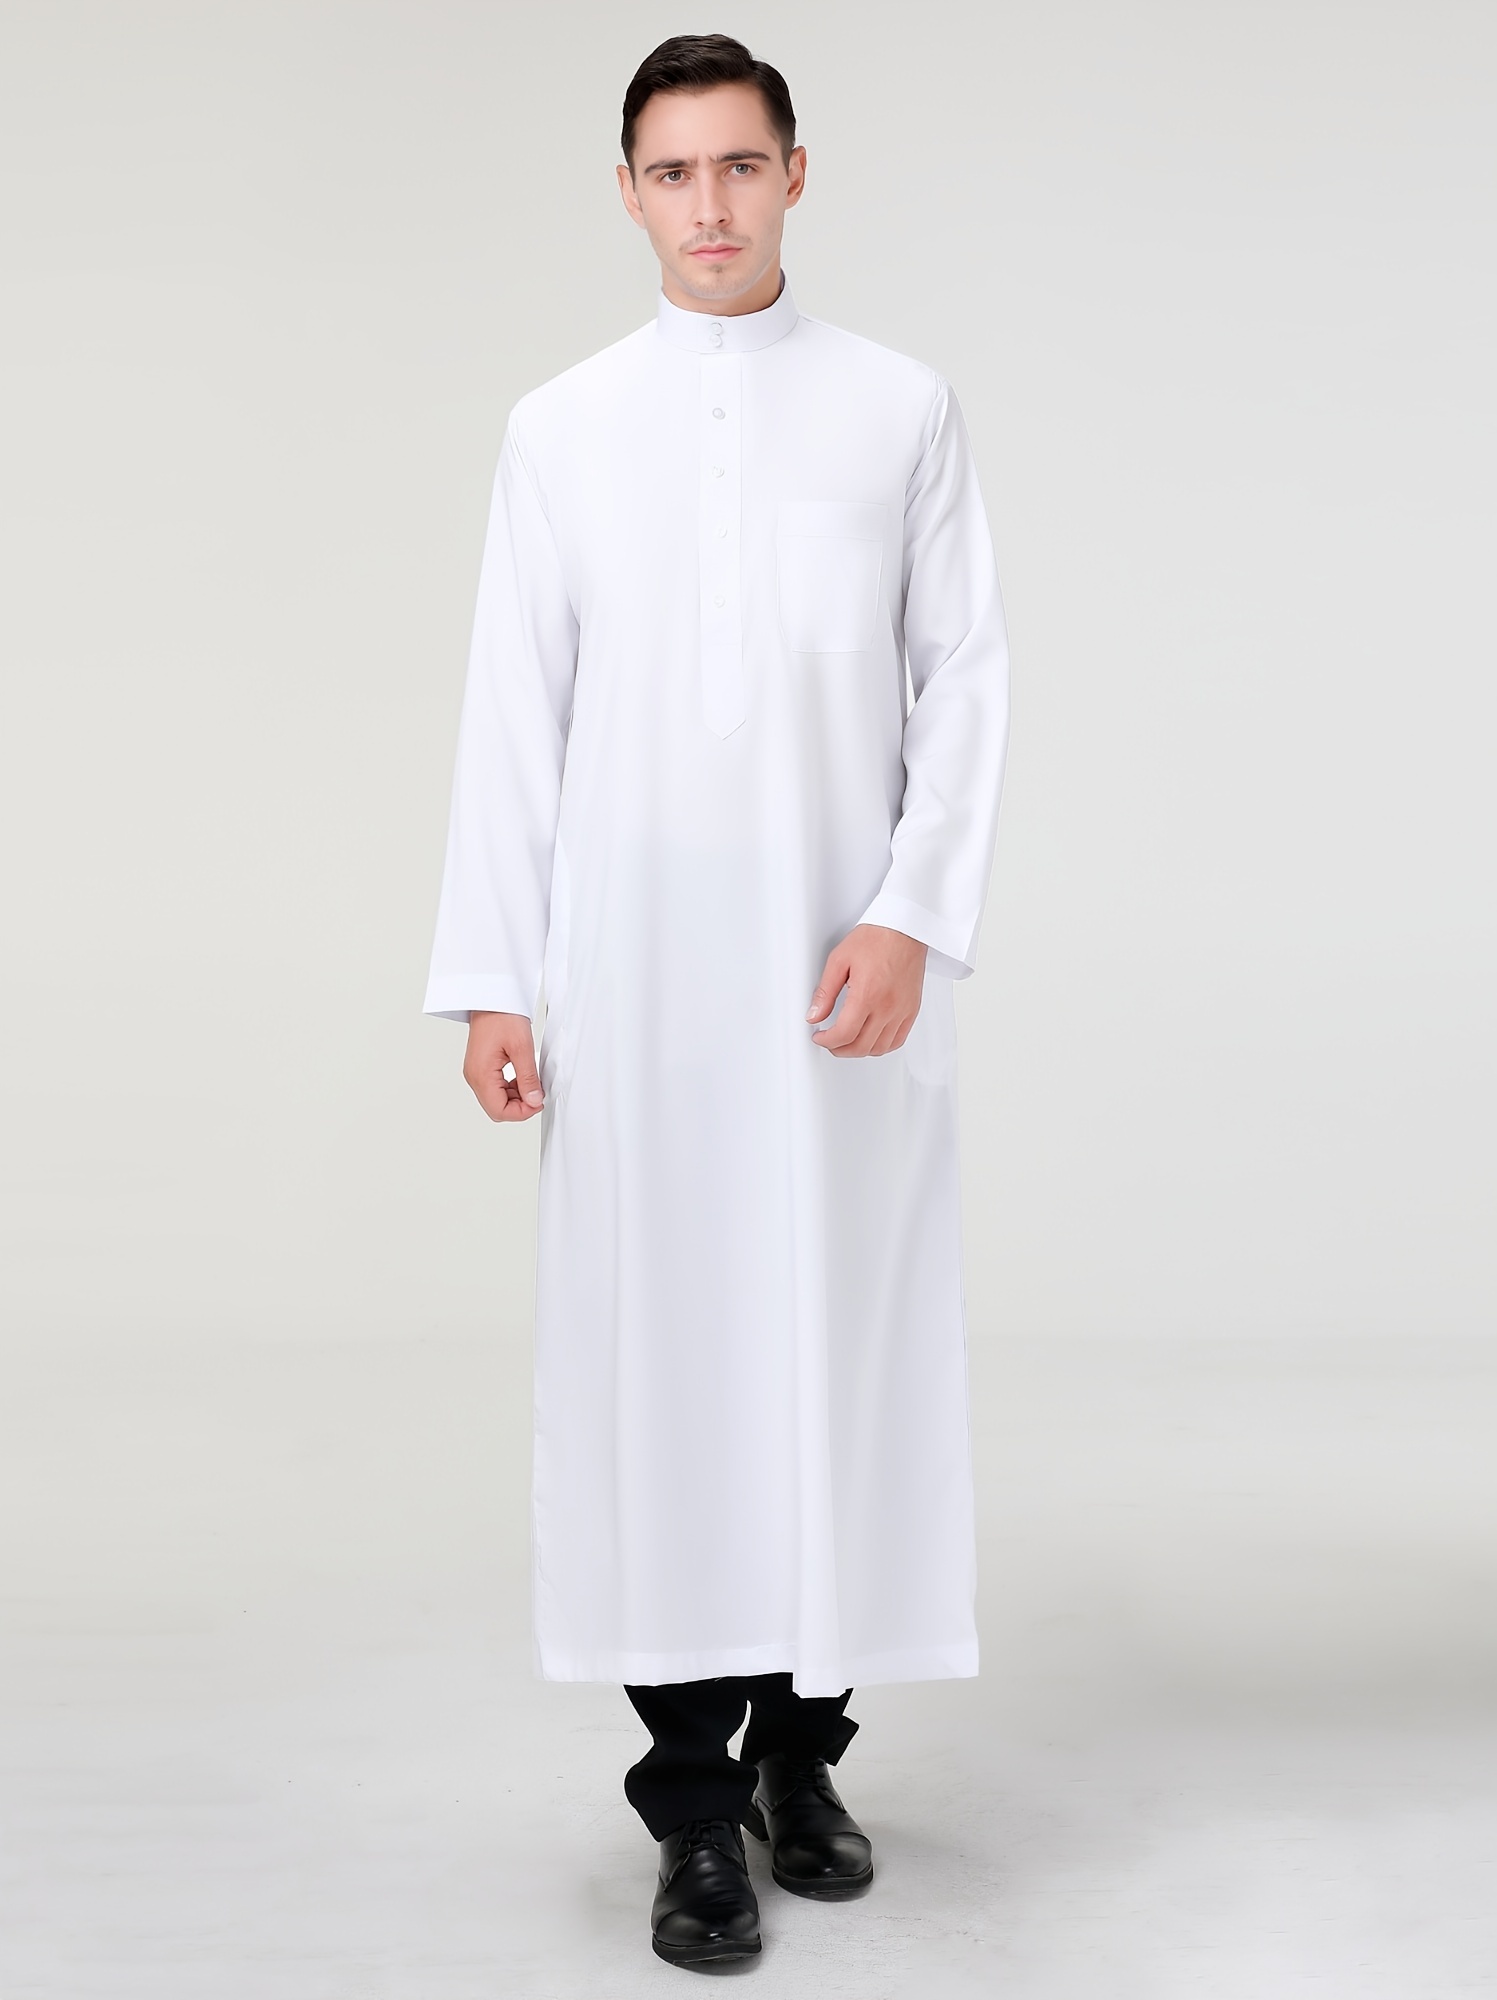 Conjunto de túnica blanca con potur – ToroModa